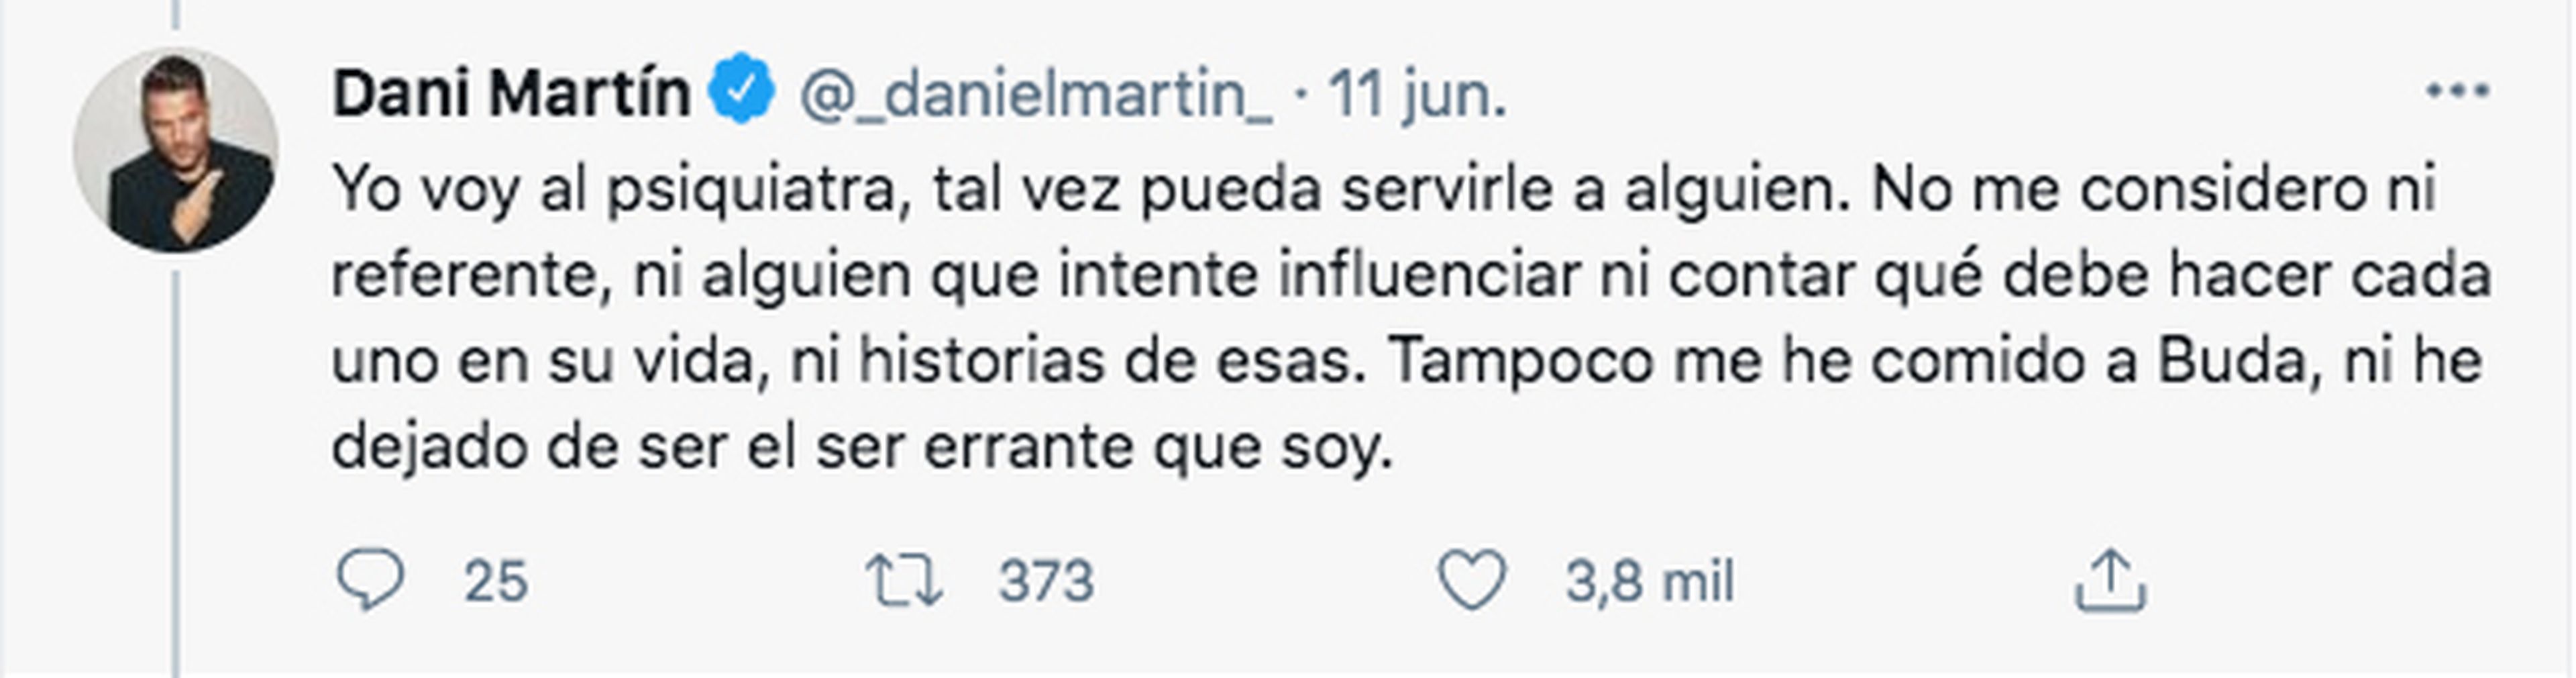 Post publicado en Twitter por el cantante Dani Martín.